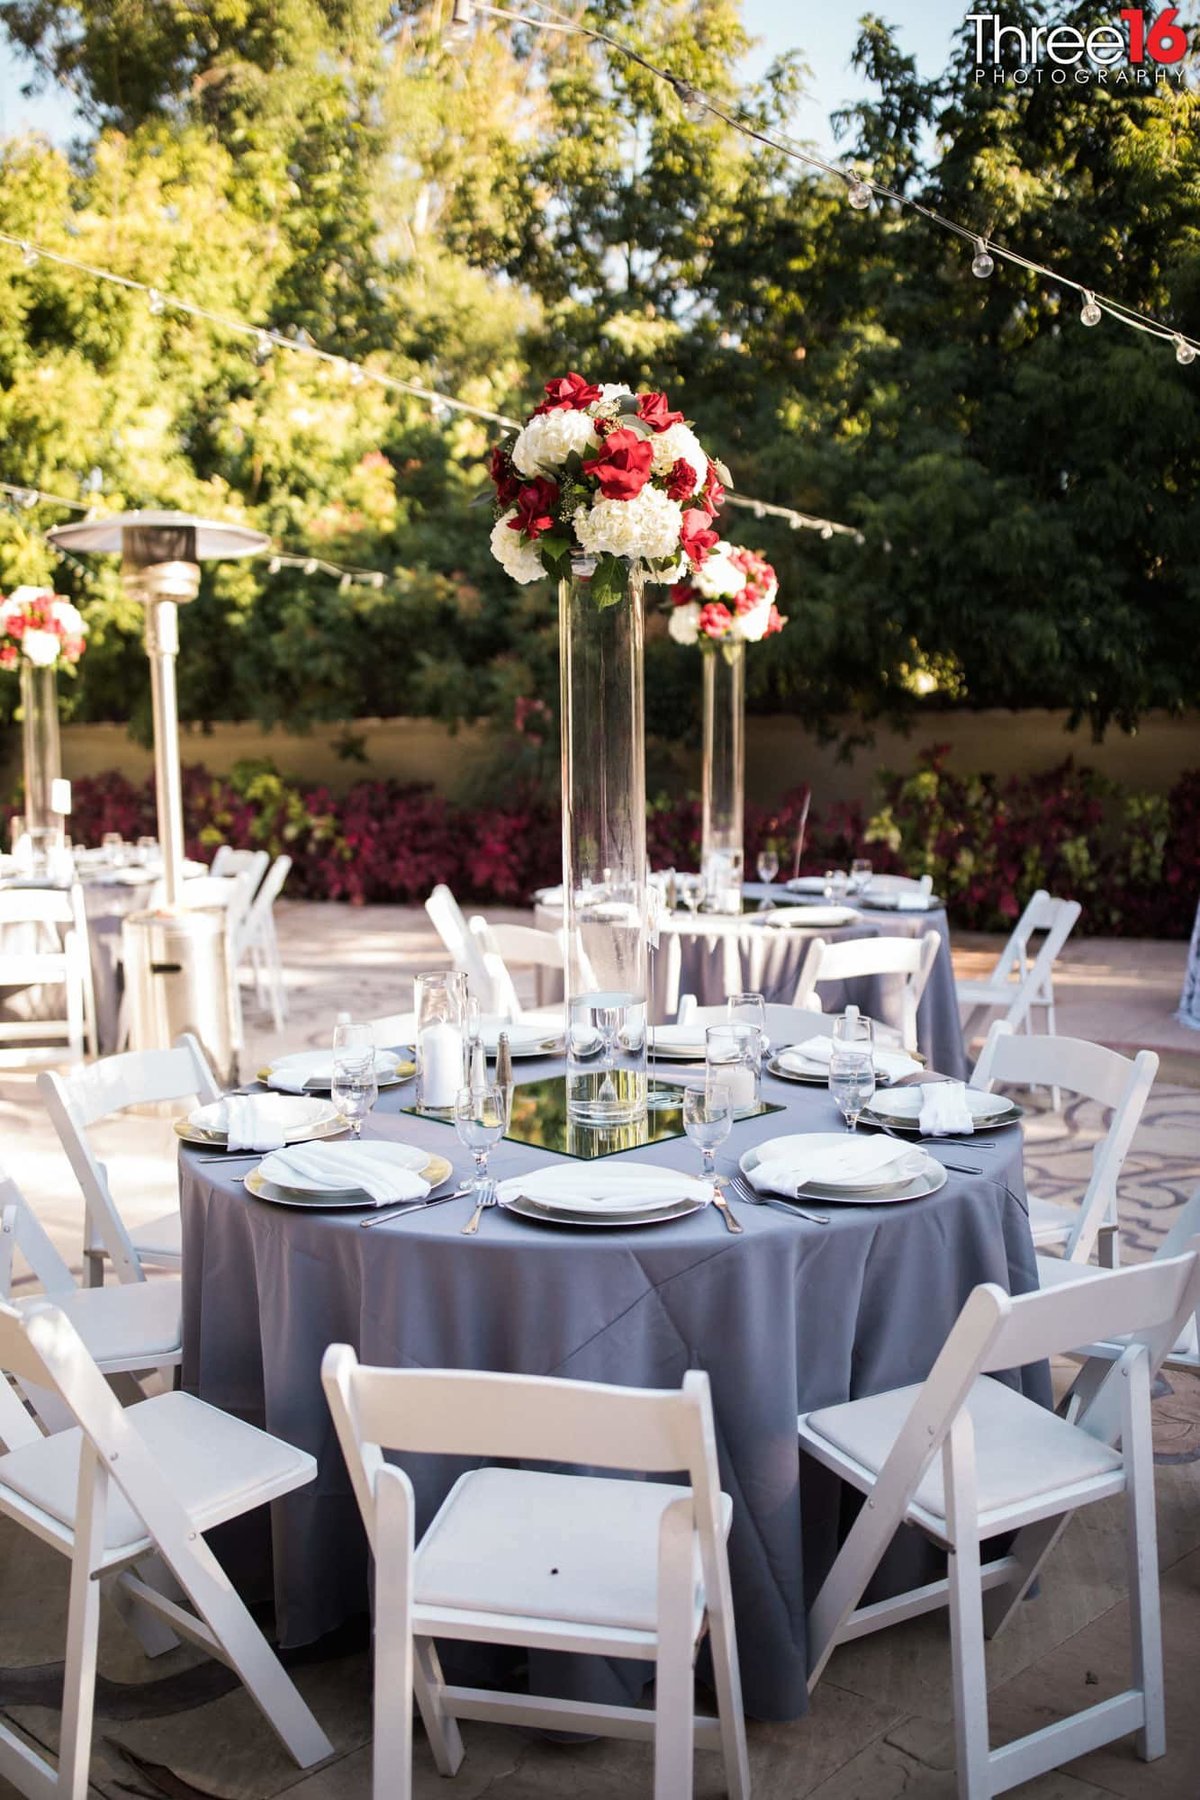 Table setup at an Eden Gardens wedding reception